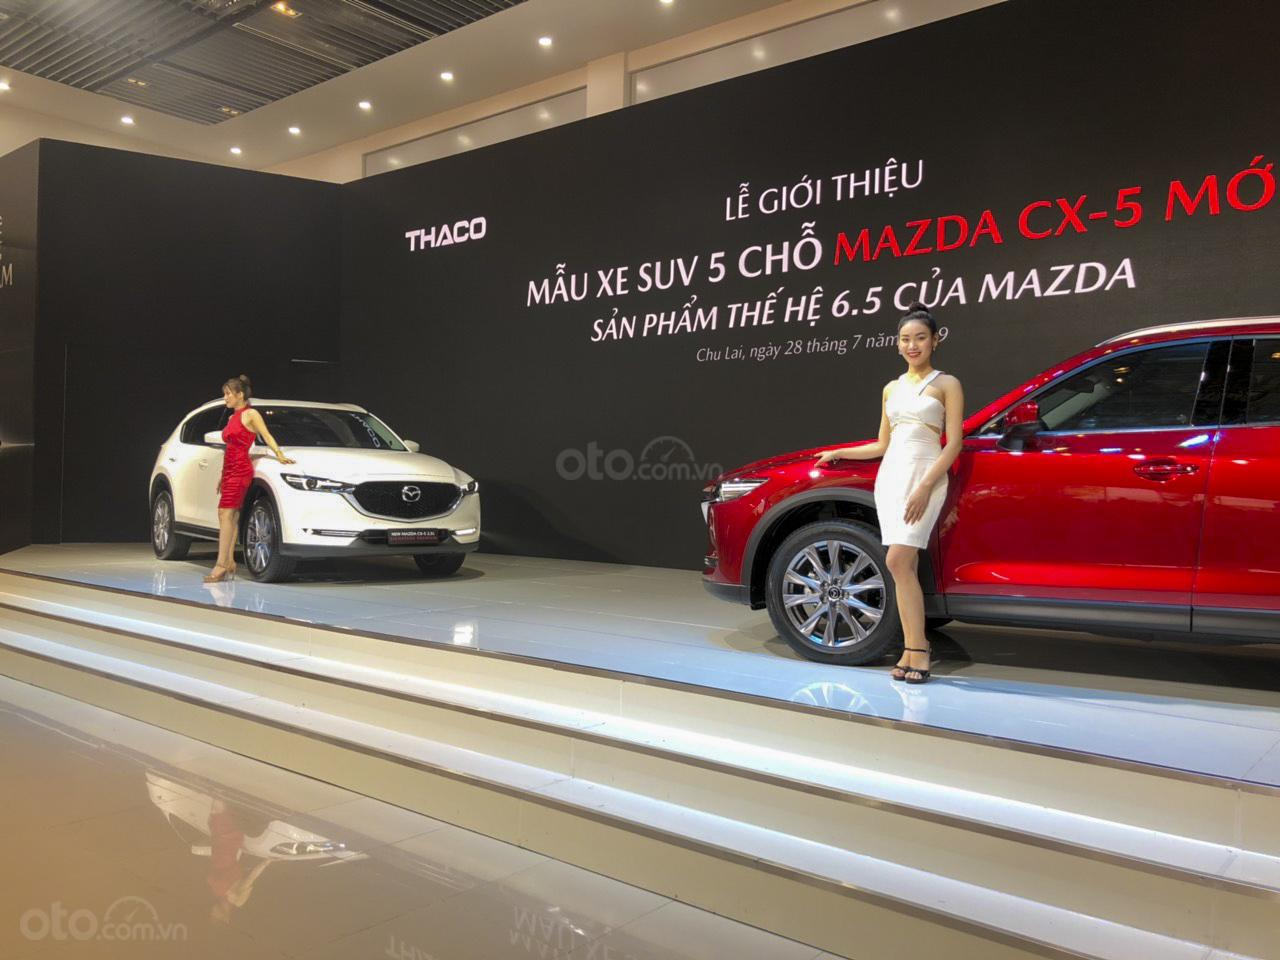 Mazda CX-5 2019 mới được nâng cấp nhẹ, tăng giá bán so với trước 1a